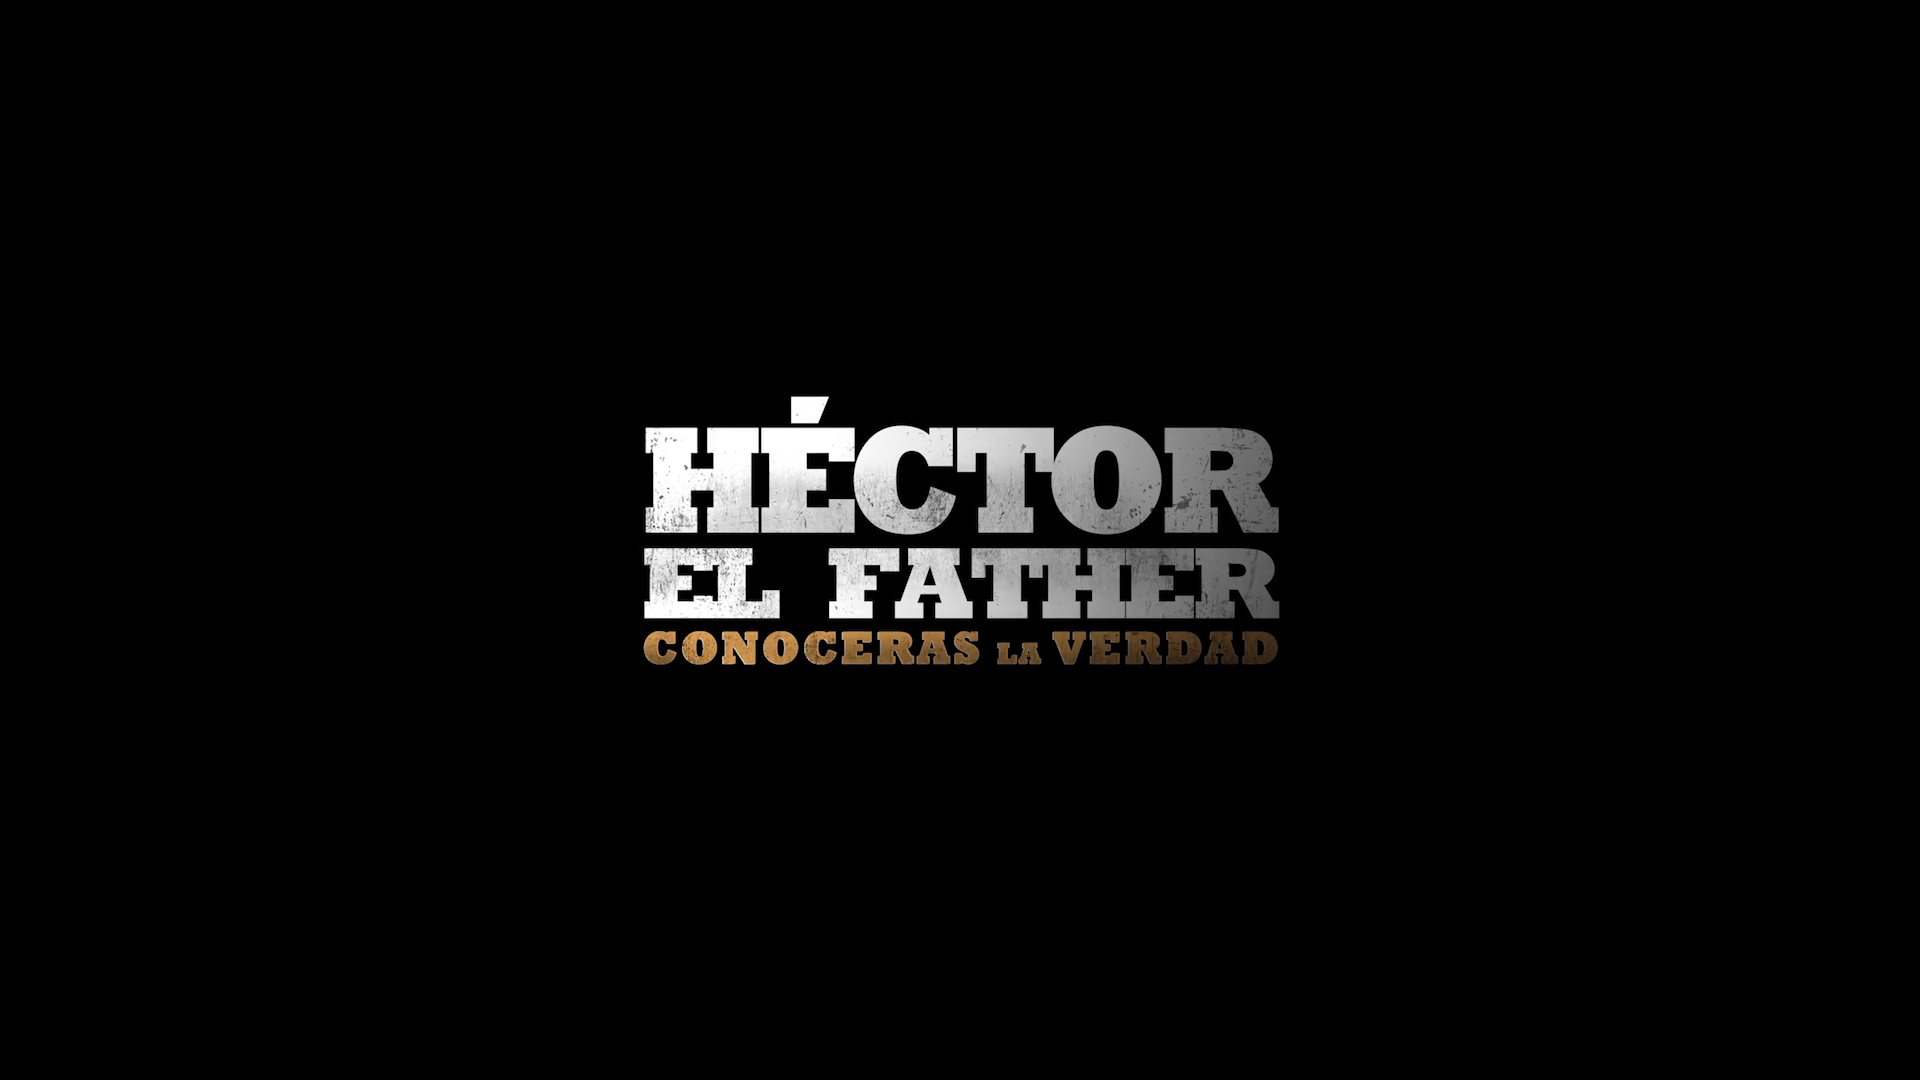 Hector El Father Conoceras la verdad 1080p WEB-DL NF